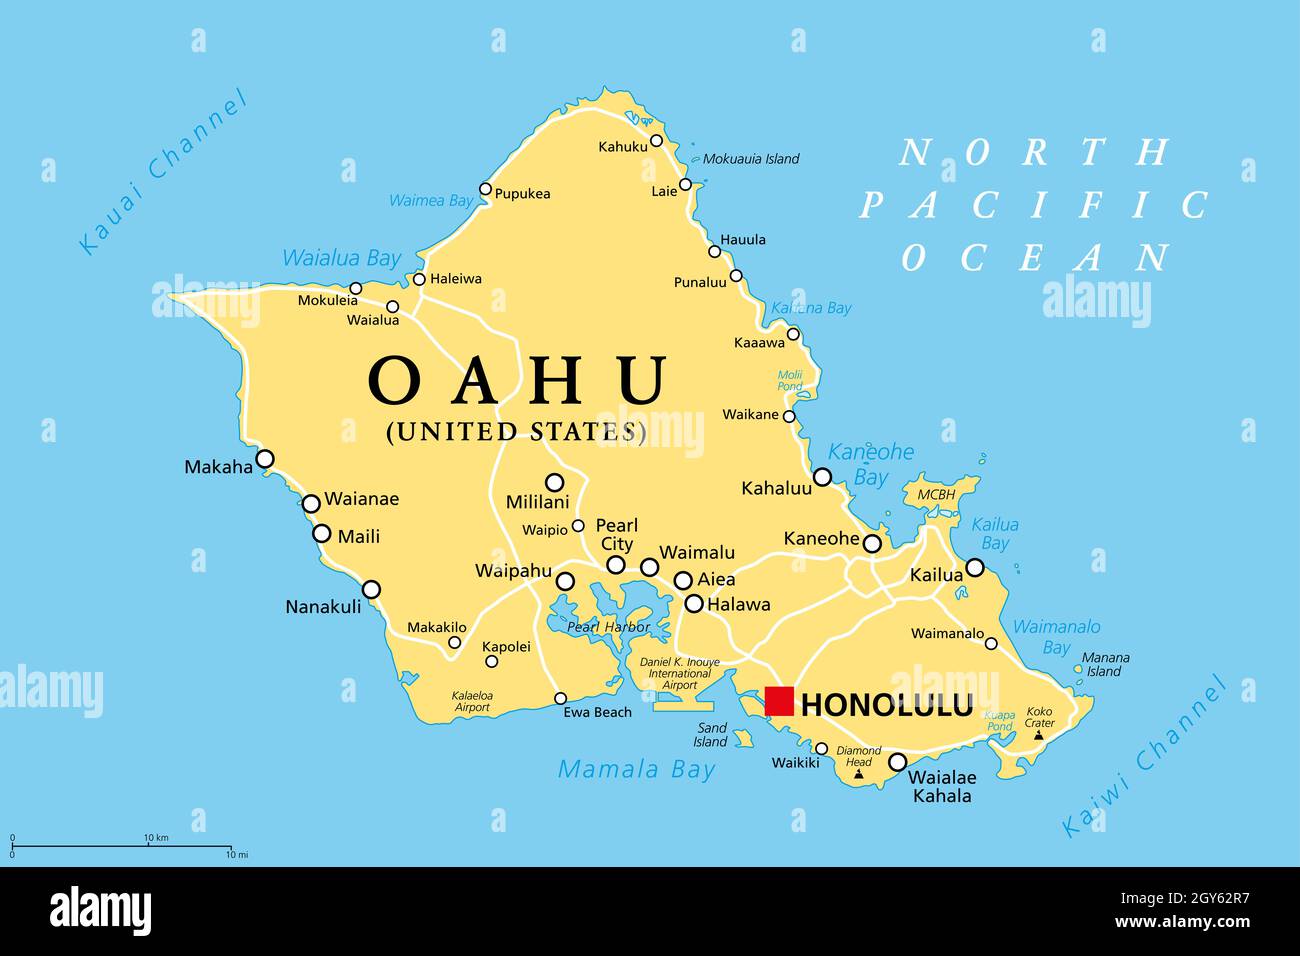 Honolulu Maps